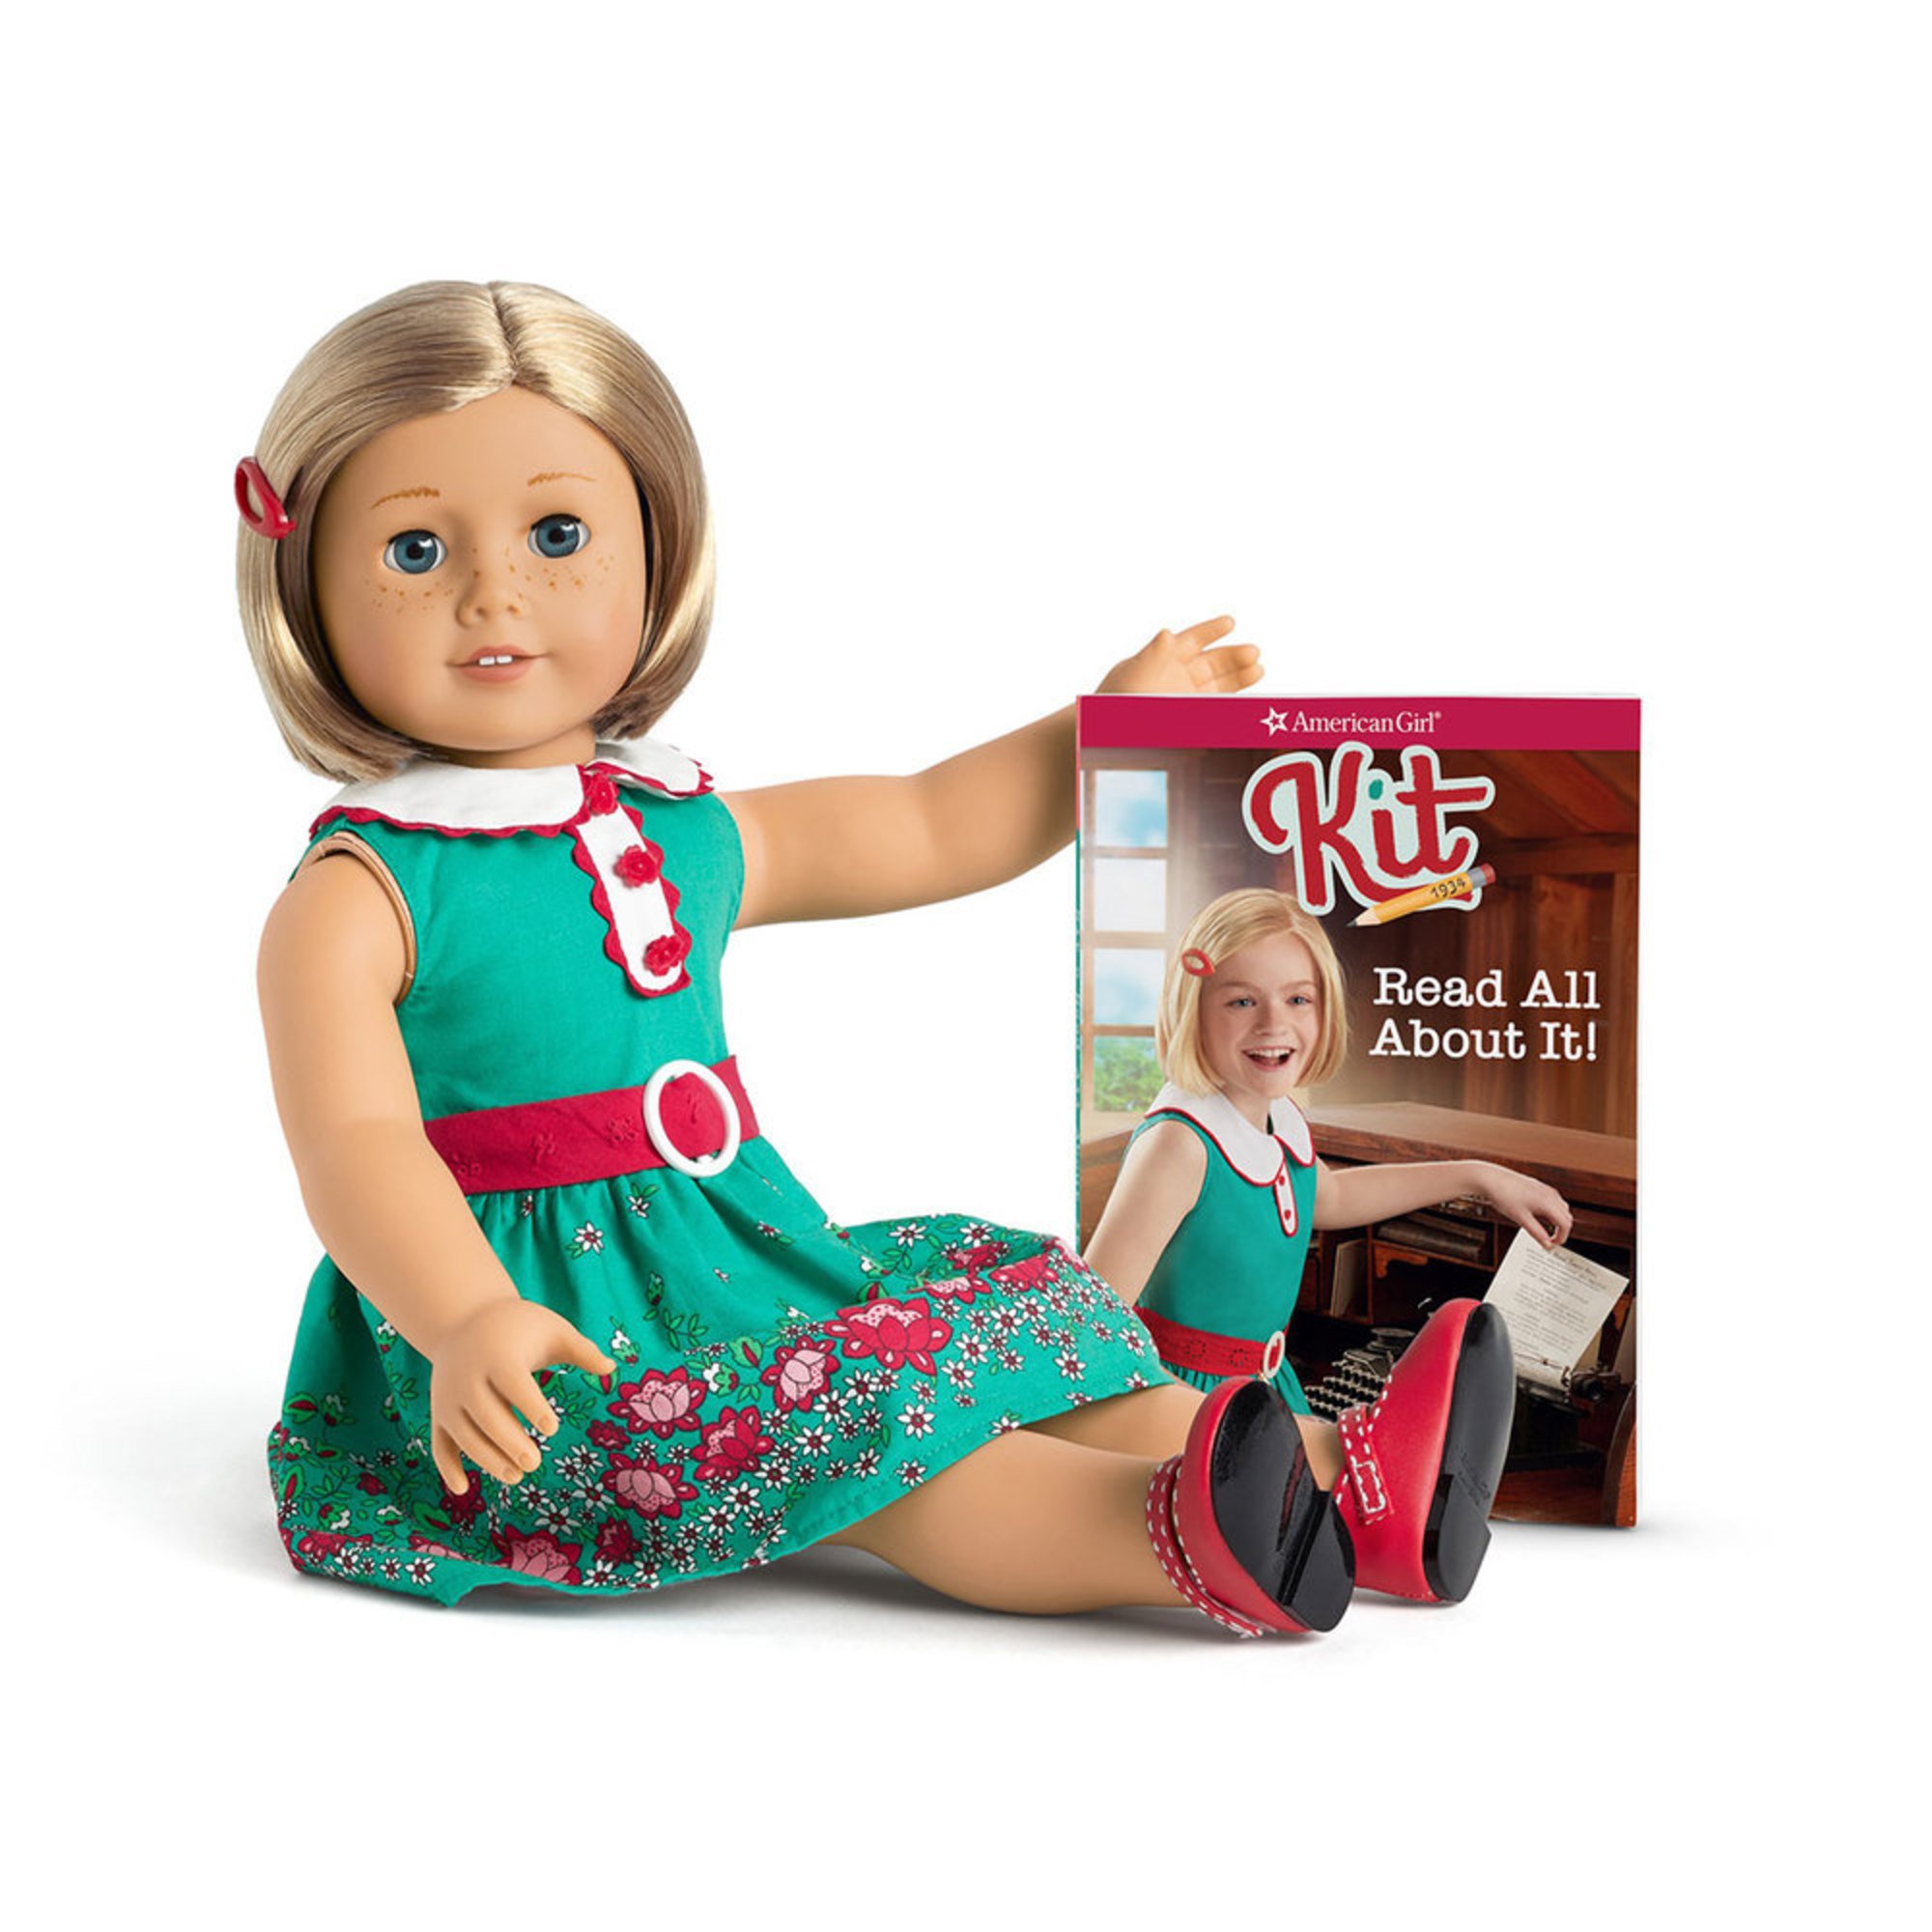 kit kittredge doll